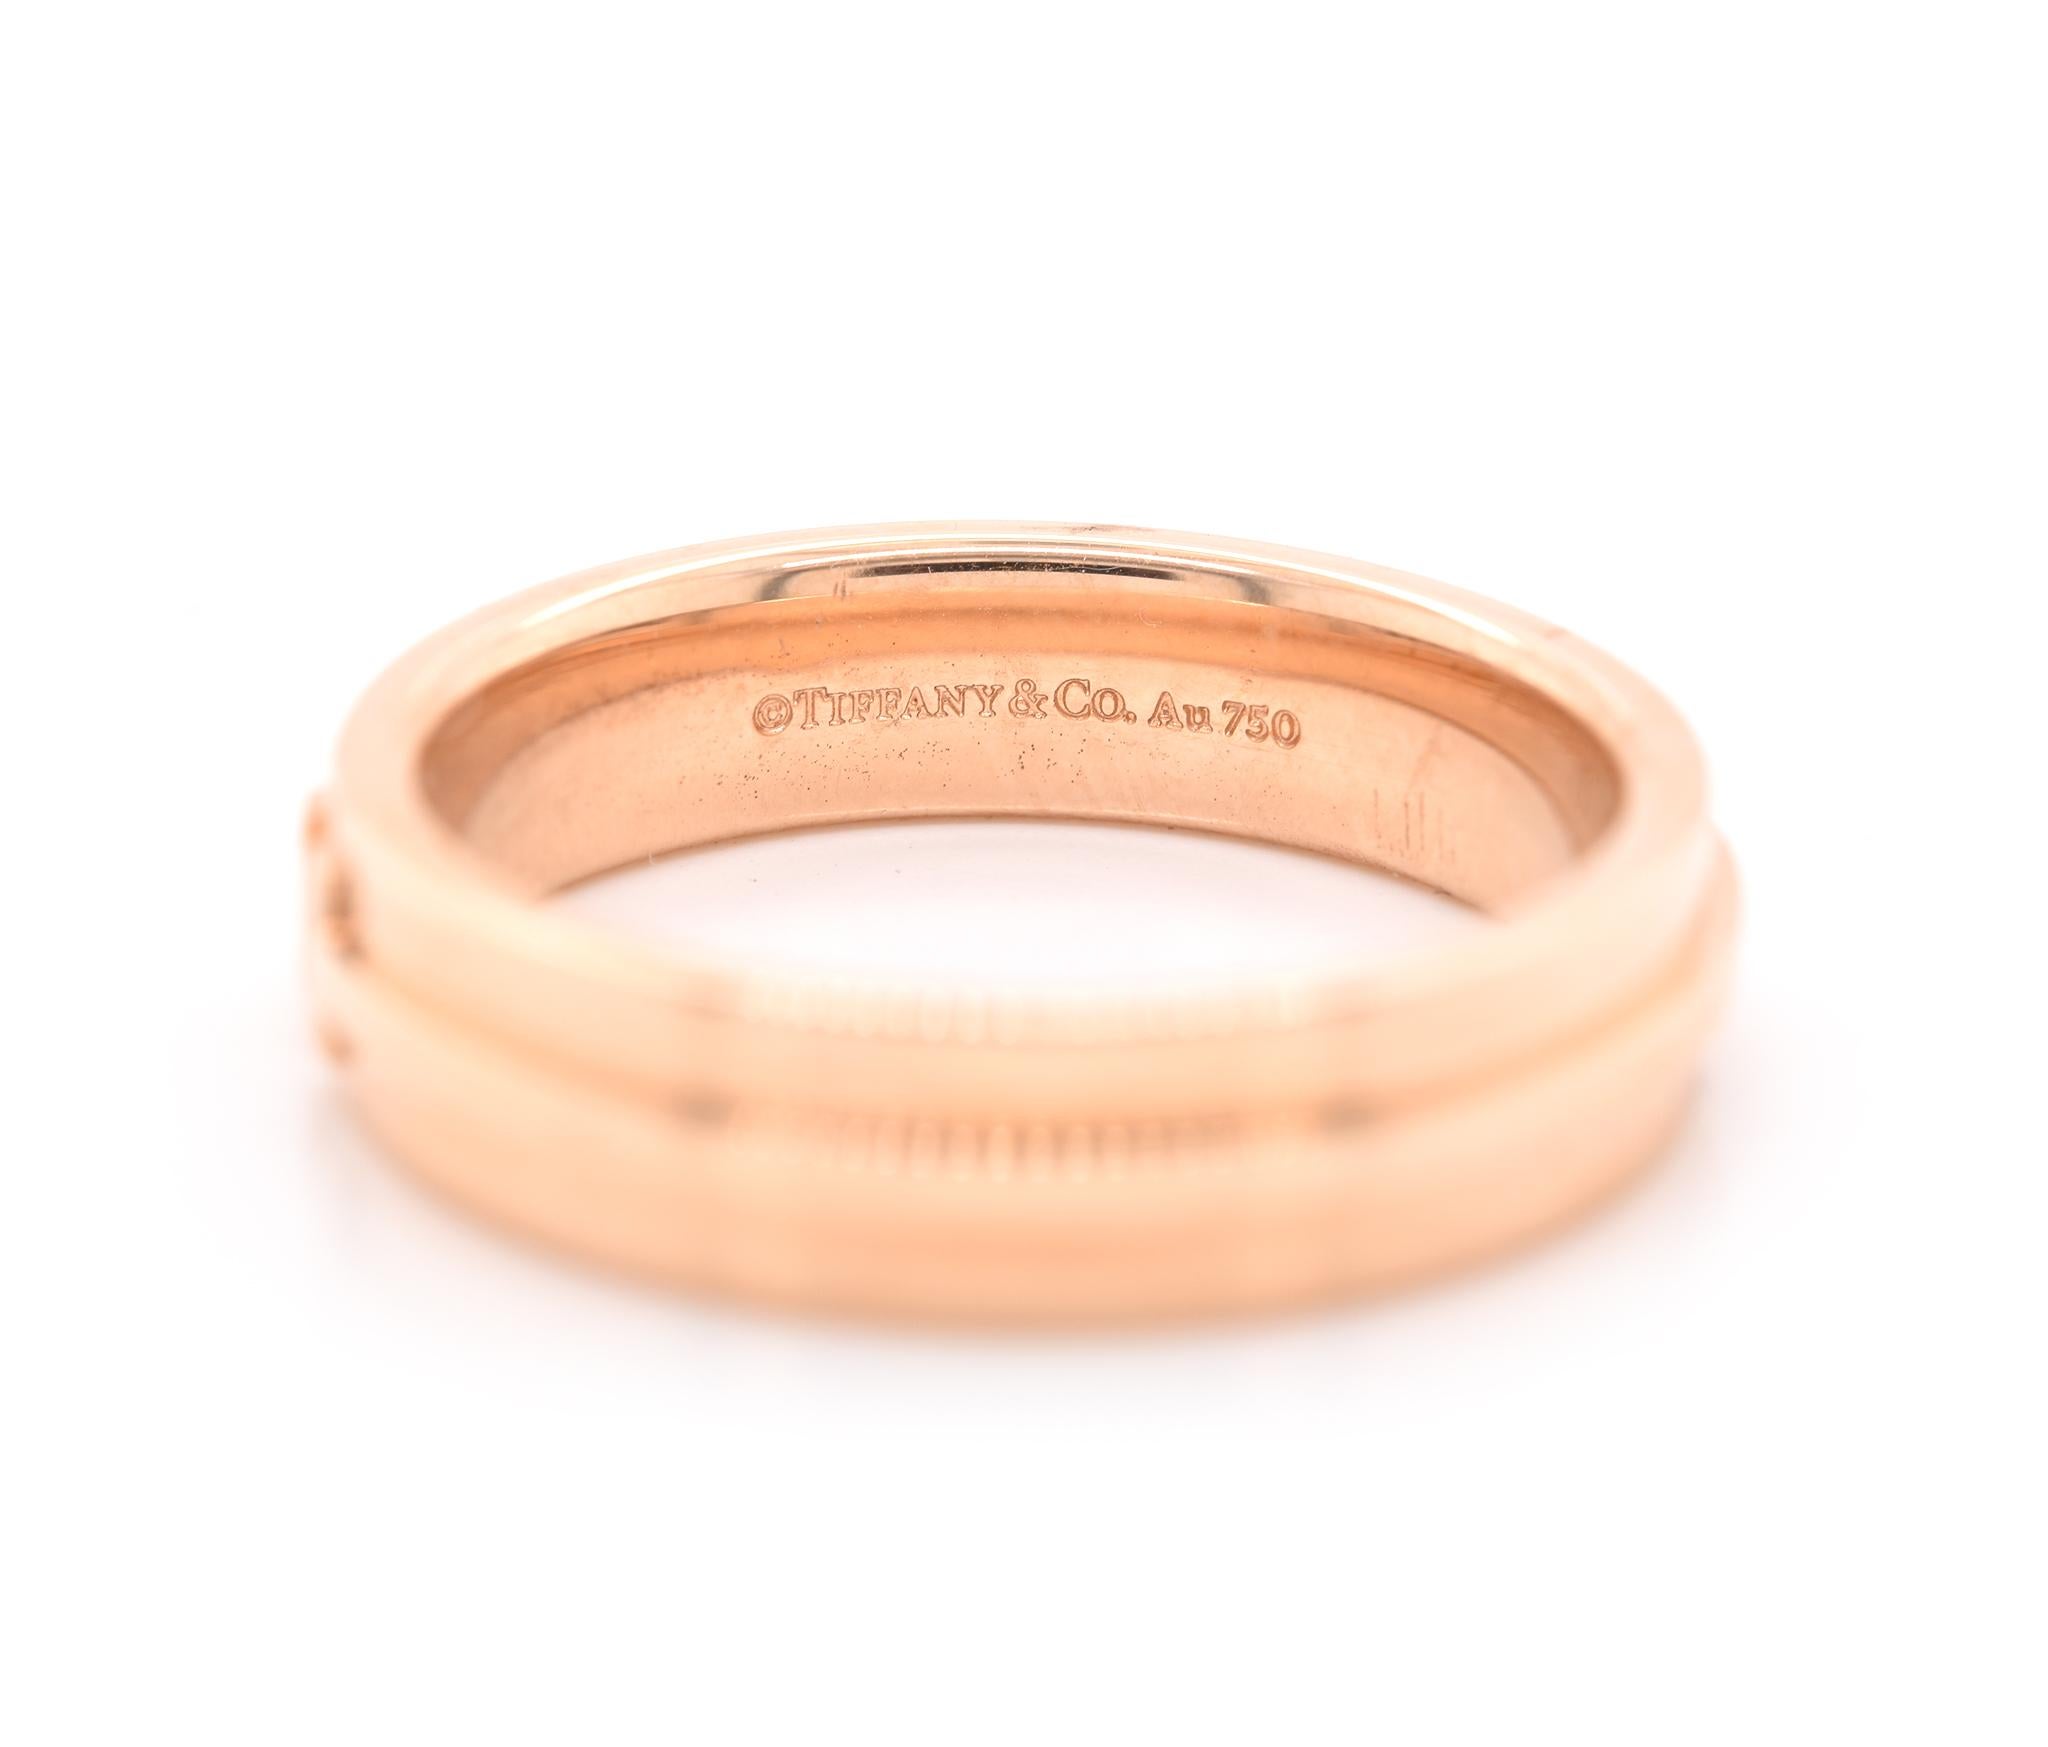 Créateur : Tiffany & Co. 
Matériau : or rose 18K
Dimensions : l'anneau mesure 5,5 mm de large
Poids : 11,04 grammes
Taille : 10.5